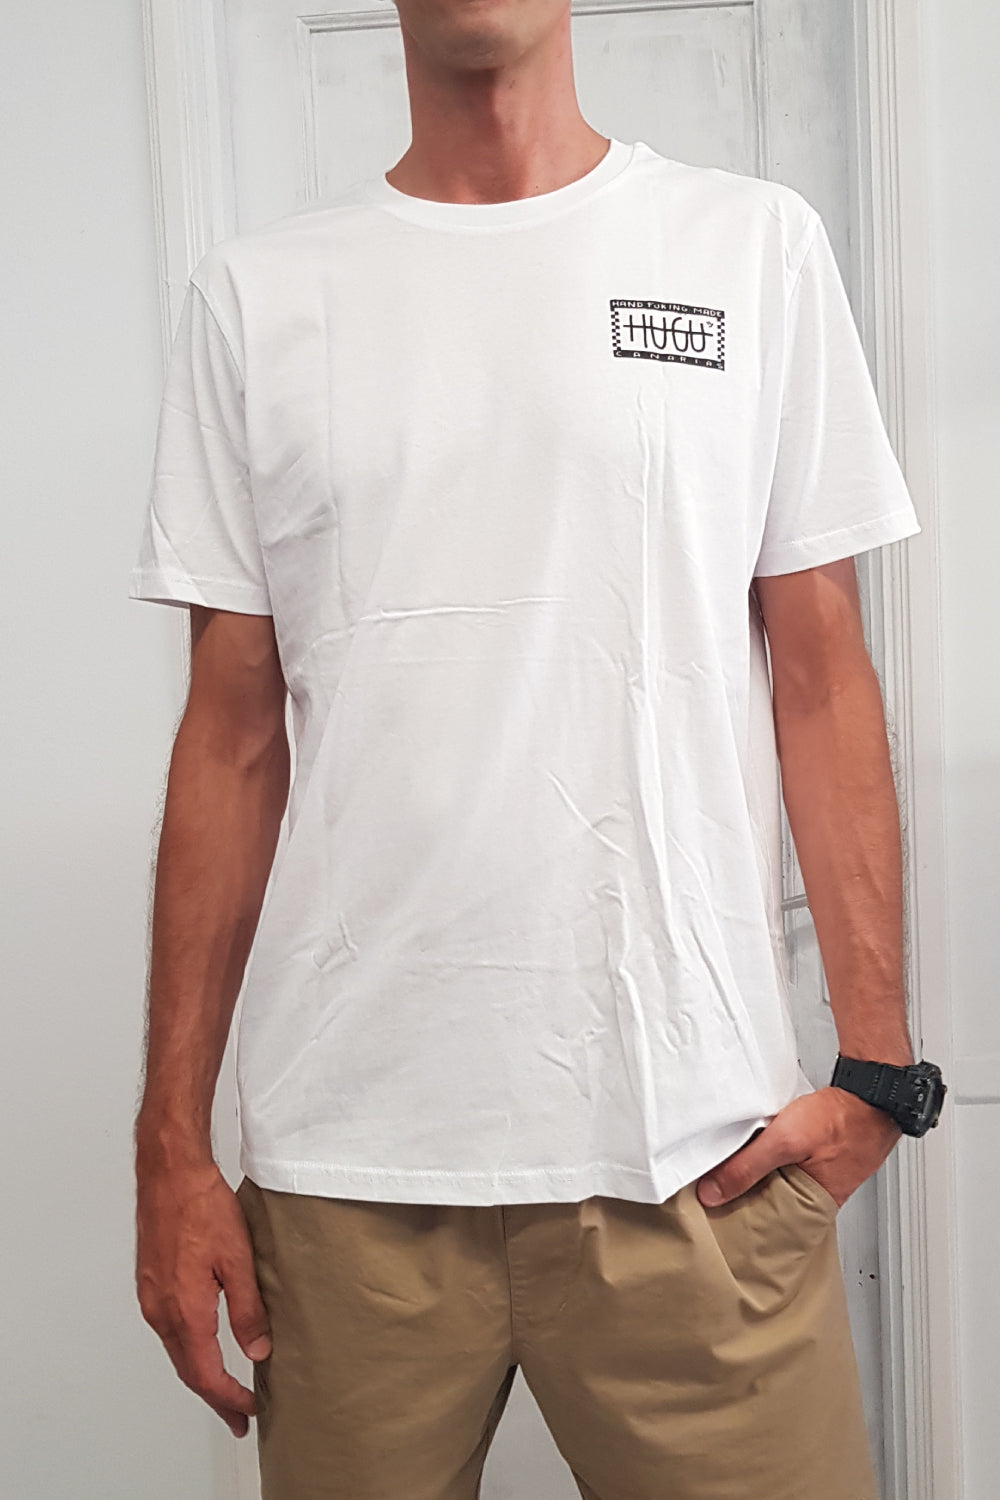 frontal de la camiseta en algodón blanco hecha a mano